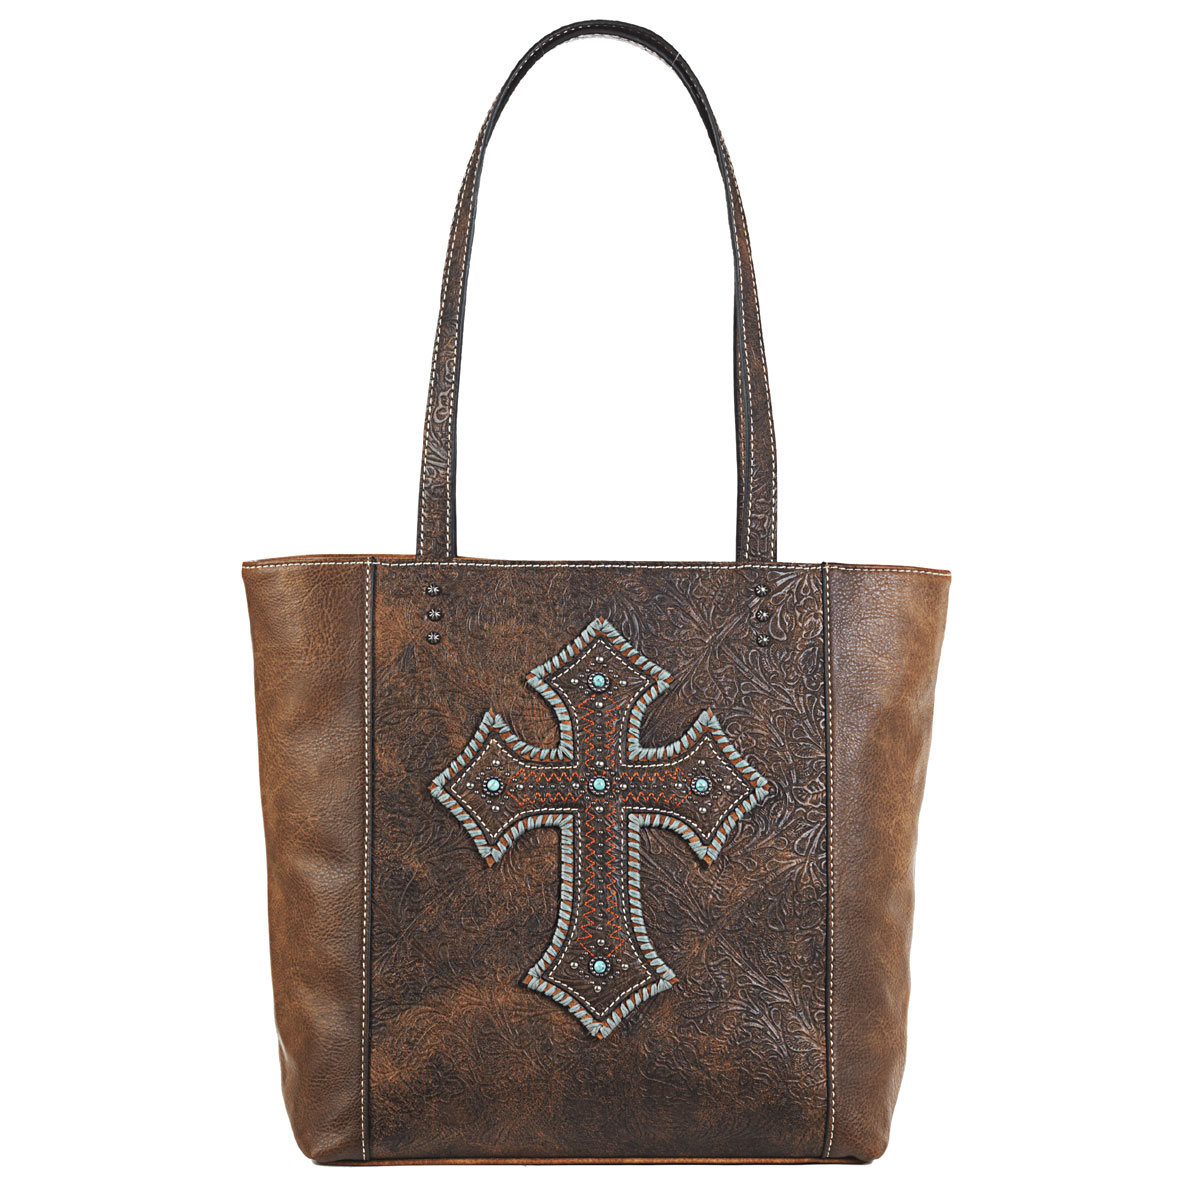 N770002844 Harper Style Conceal Carry Tote Bag, Medium Brown - 15 X 12.50 X 4.75 In.